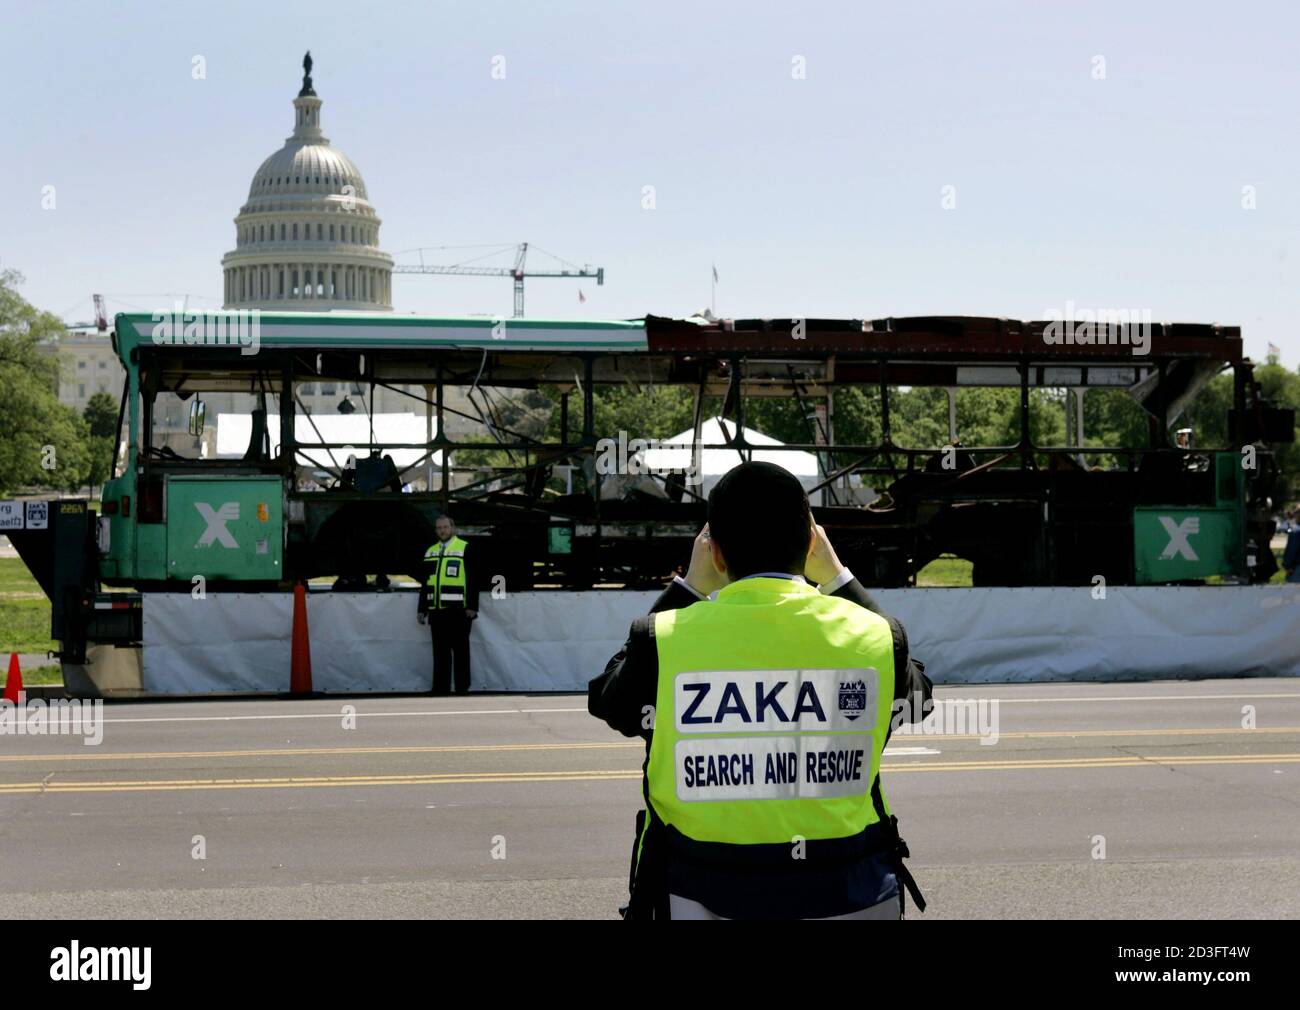 Matis Zahav (L), Director Ejecutivo de los voluntarios de rescate y recuperación de Zaka que trabajan en Israel, tiene su foto tomada por un colega frente a un autobús israelí destruido que se exhibe fuera del edificio del Capitolio de los Estados Unidos en Washington el 6 de mayo de 2004. Las organizaciones "Cristianos para Israel" y Zaka llevaron el autobús número 19 a los Estados Unidos, Que fue golpeado por un terrorista suicida, matando a 11 personas e hiriendo a más de 50 en Jerusalén el 29 de enero, para demostrar que los ataques terroristas pueden atacar en cualquier lugar y que todas las religiones deben unirse en una causa común contra los ataques terroristas. REUTERS/Jason Reed JIR/J Foto de stock